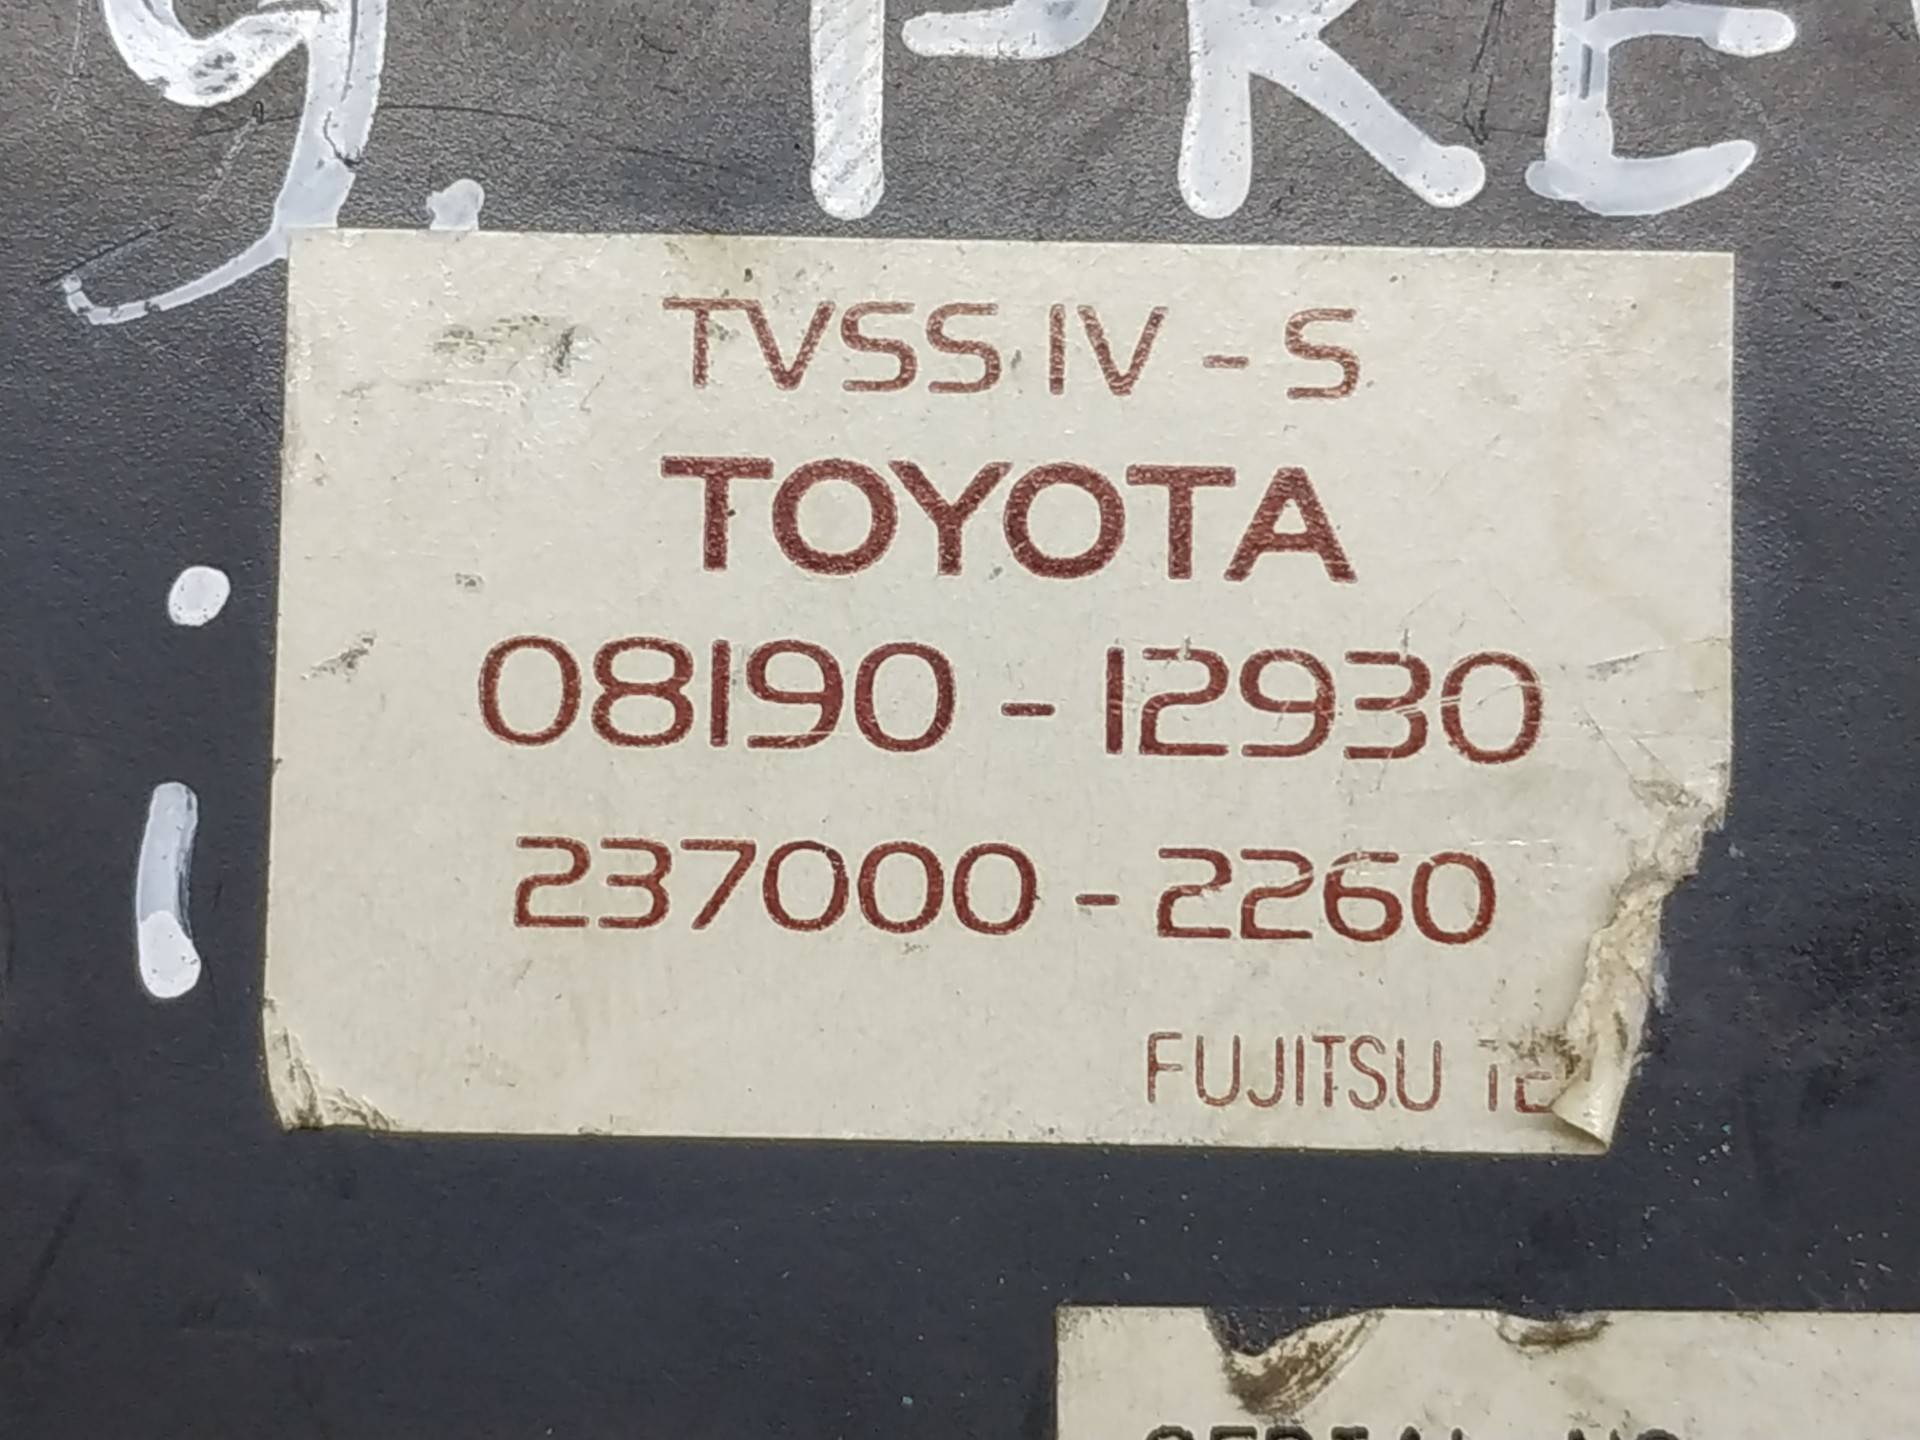 Блок управления сигнализацией к Toyota Previa 08190-12930,237000-2260, 2003, купить | DT-2067969. Фото #2